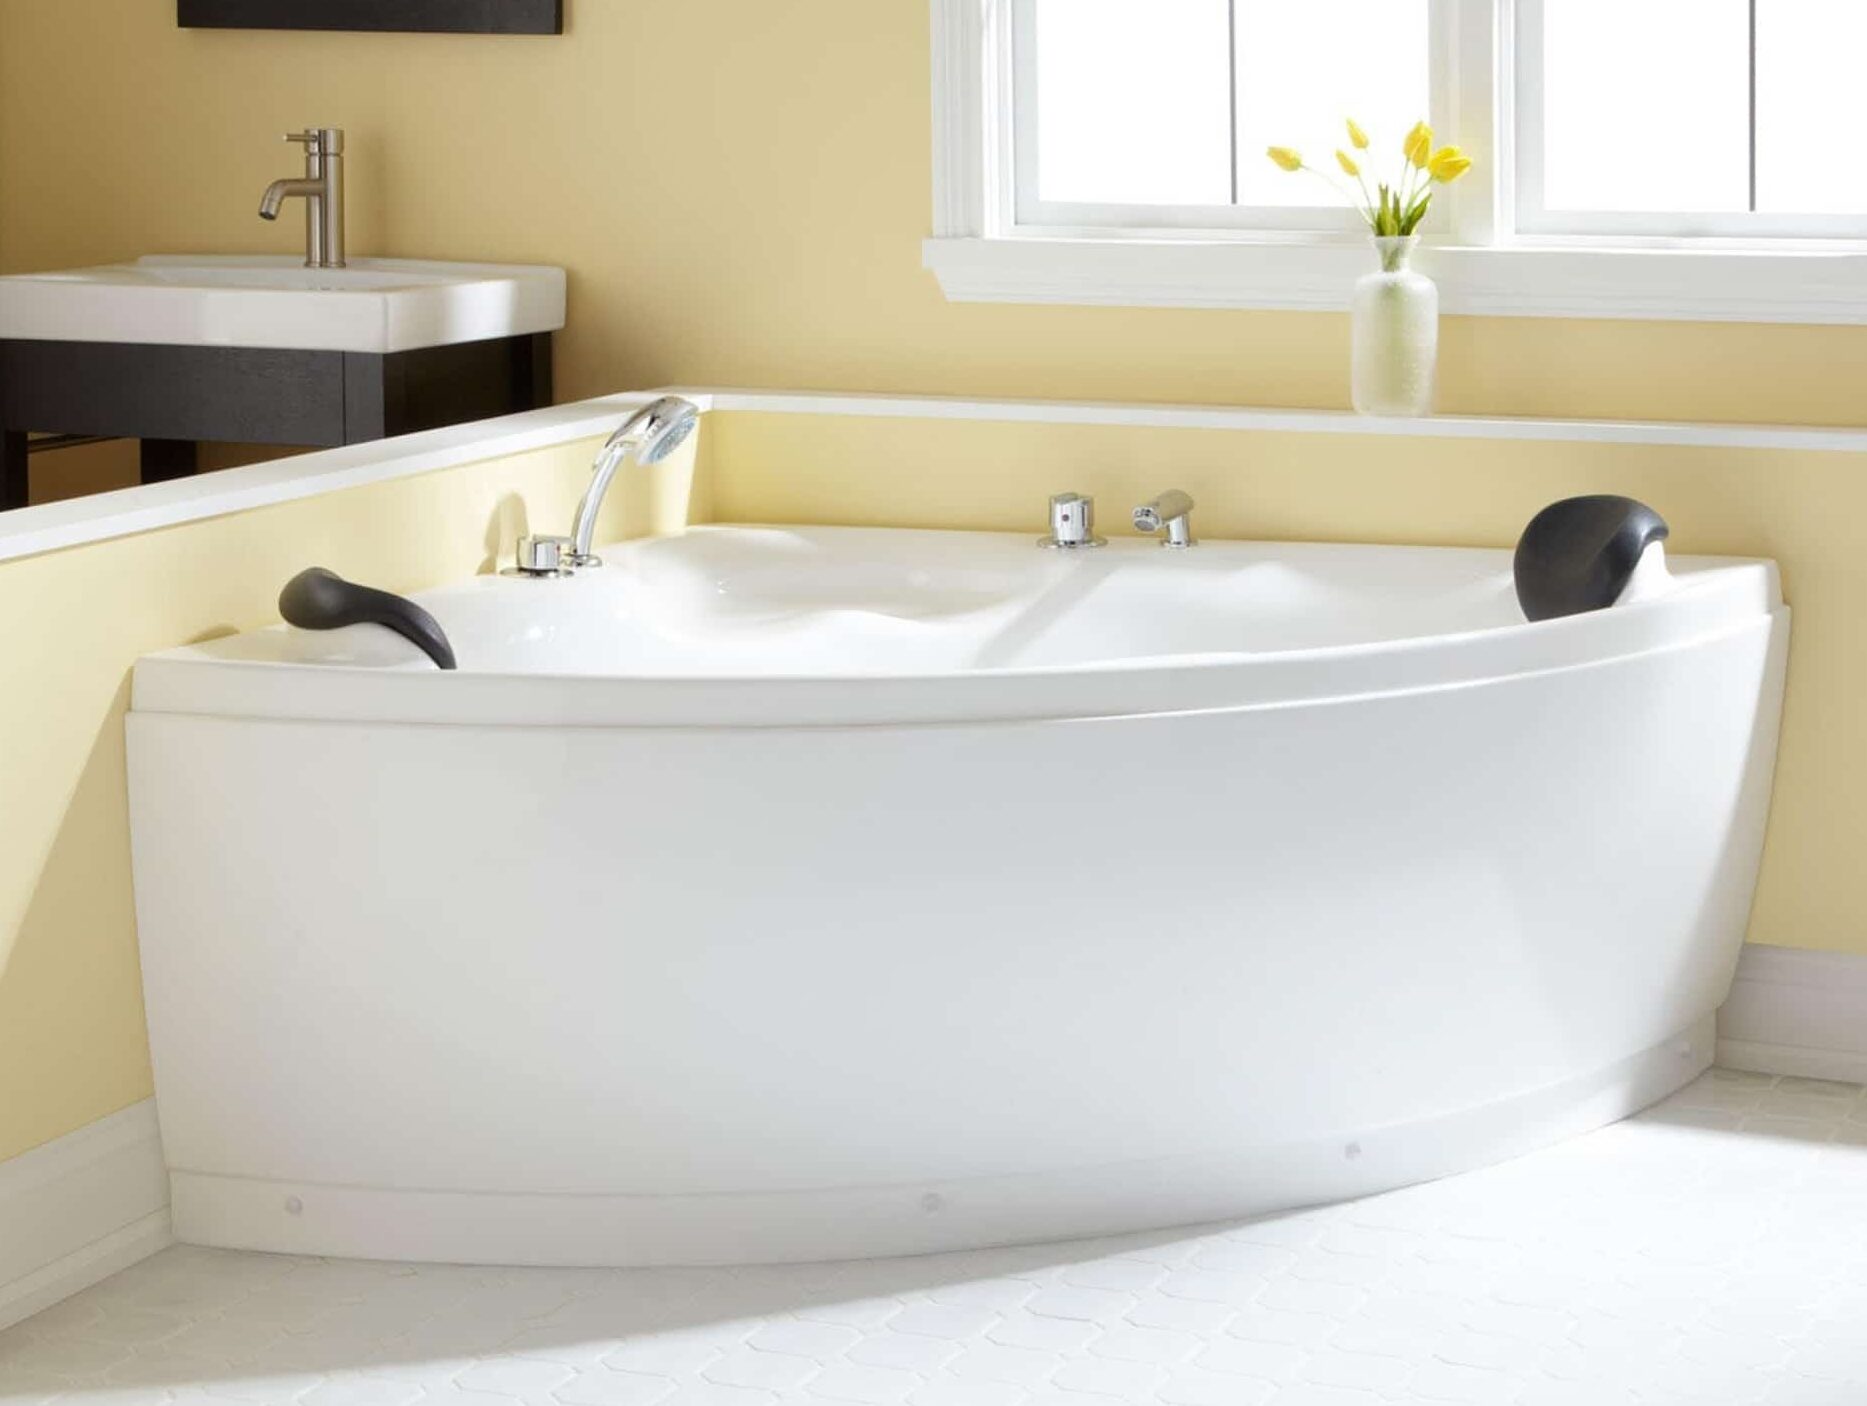 5 Best Corner Bathtubs In Detail Reviews Aug 2021